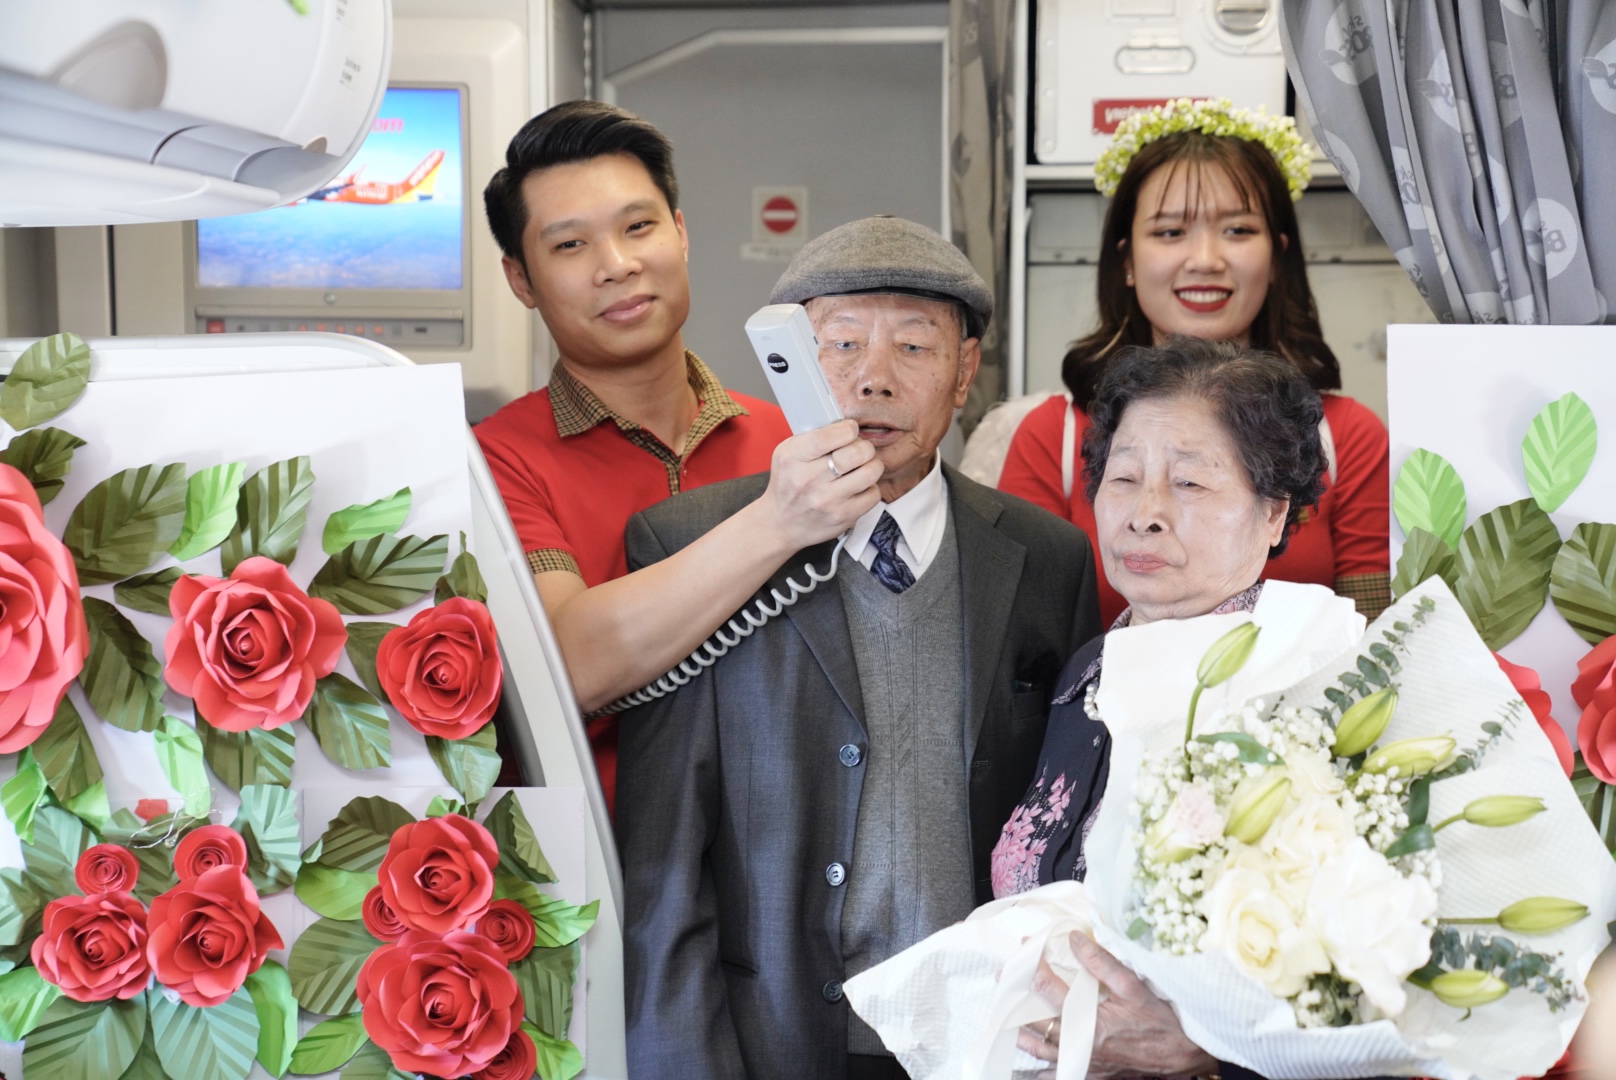 Cụ ông U90 tỏ tình với vợ ngọt ngào trên chuyến bay Vietjet ngày Valentine- Ảnh 2.